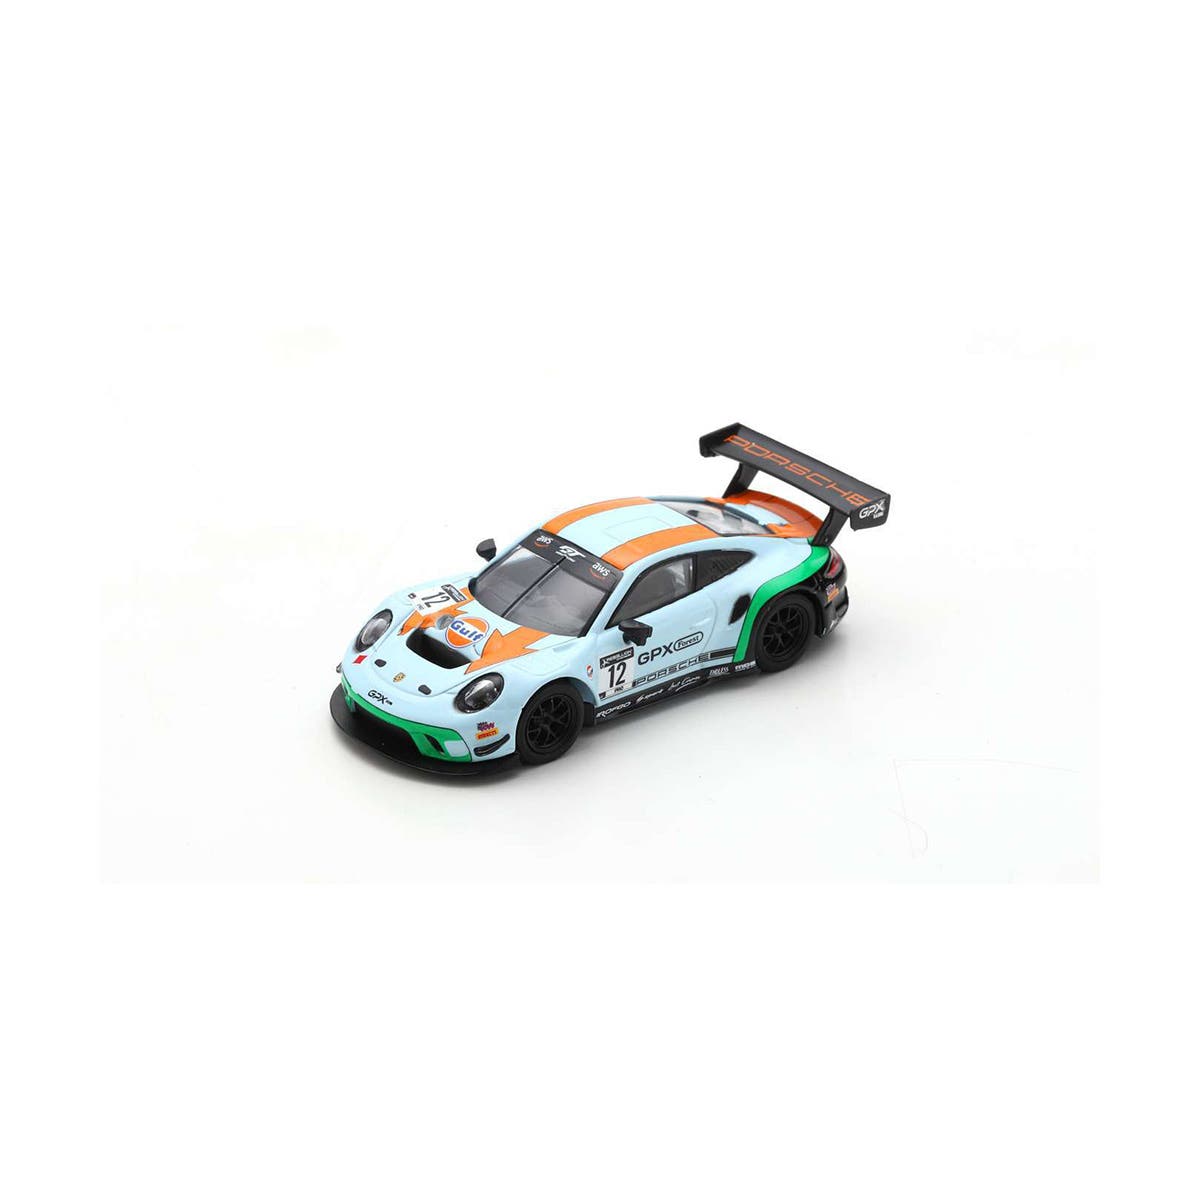 Porsche GT3 R GPX Racing No.12 "The Diamond" - 1:64 Scale Resin Model Car